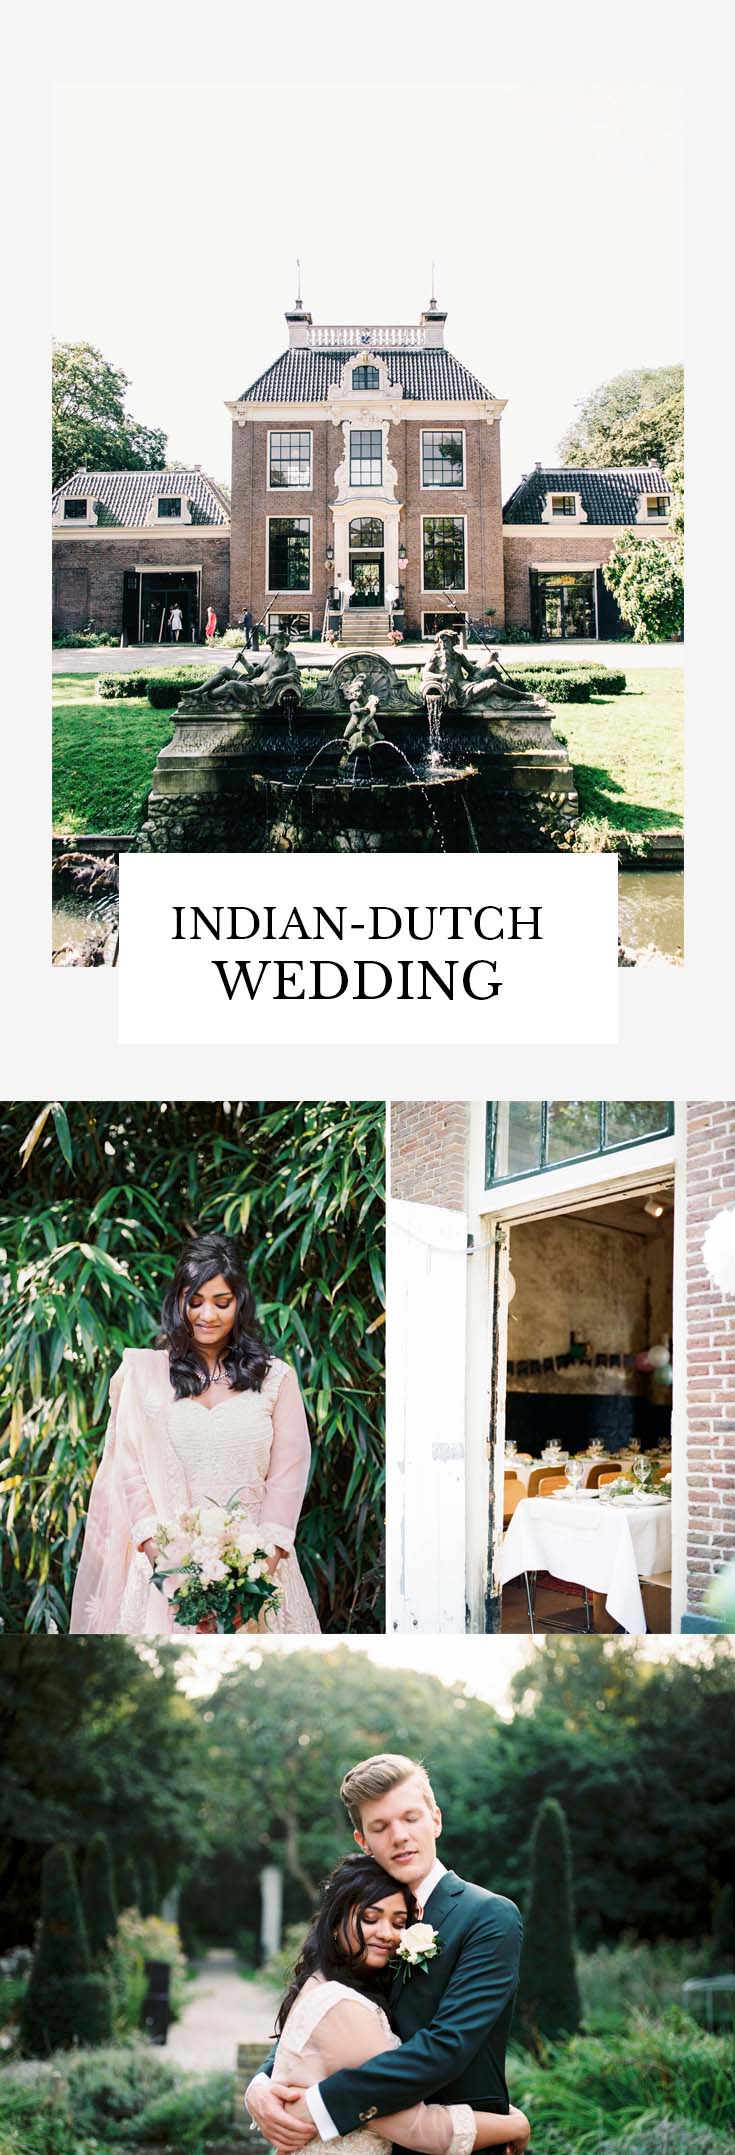 Indian-dutch wedding in Amsterdam